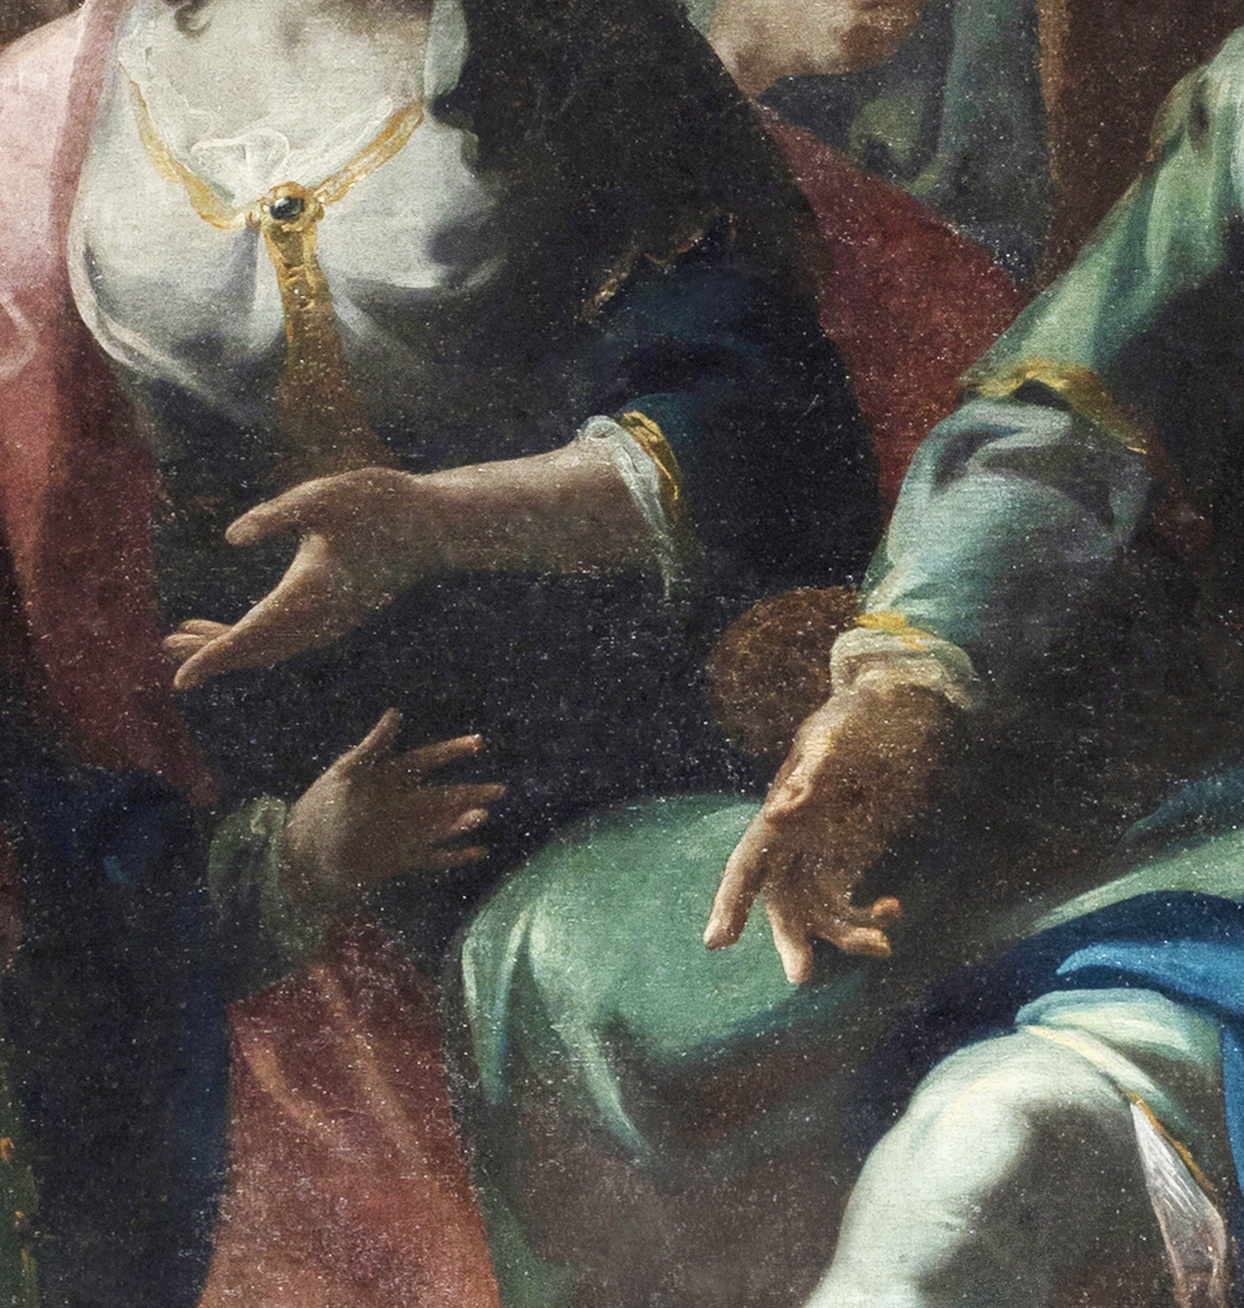 Federico Ferrario - L’incontro di Davide con Betsabea e il piccolo Salomone